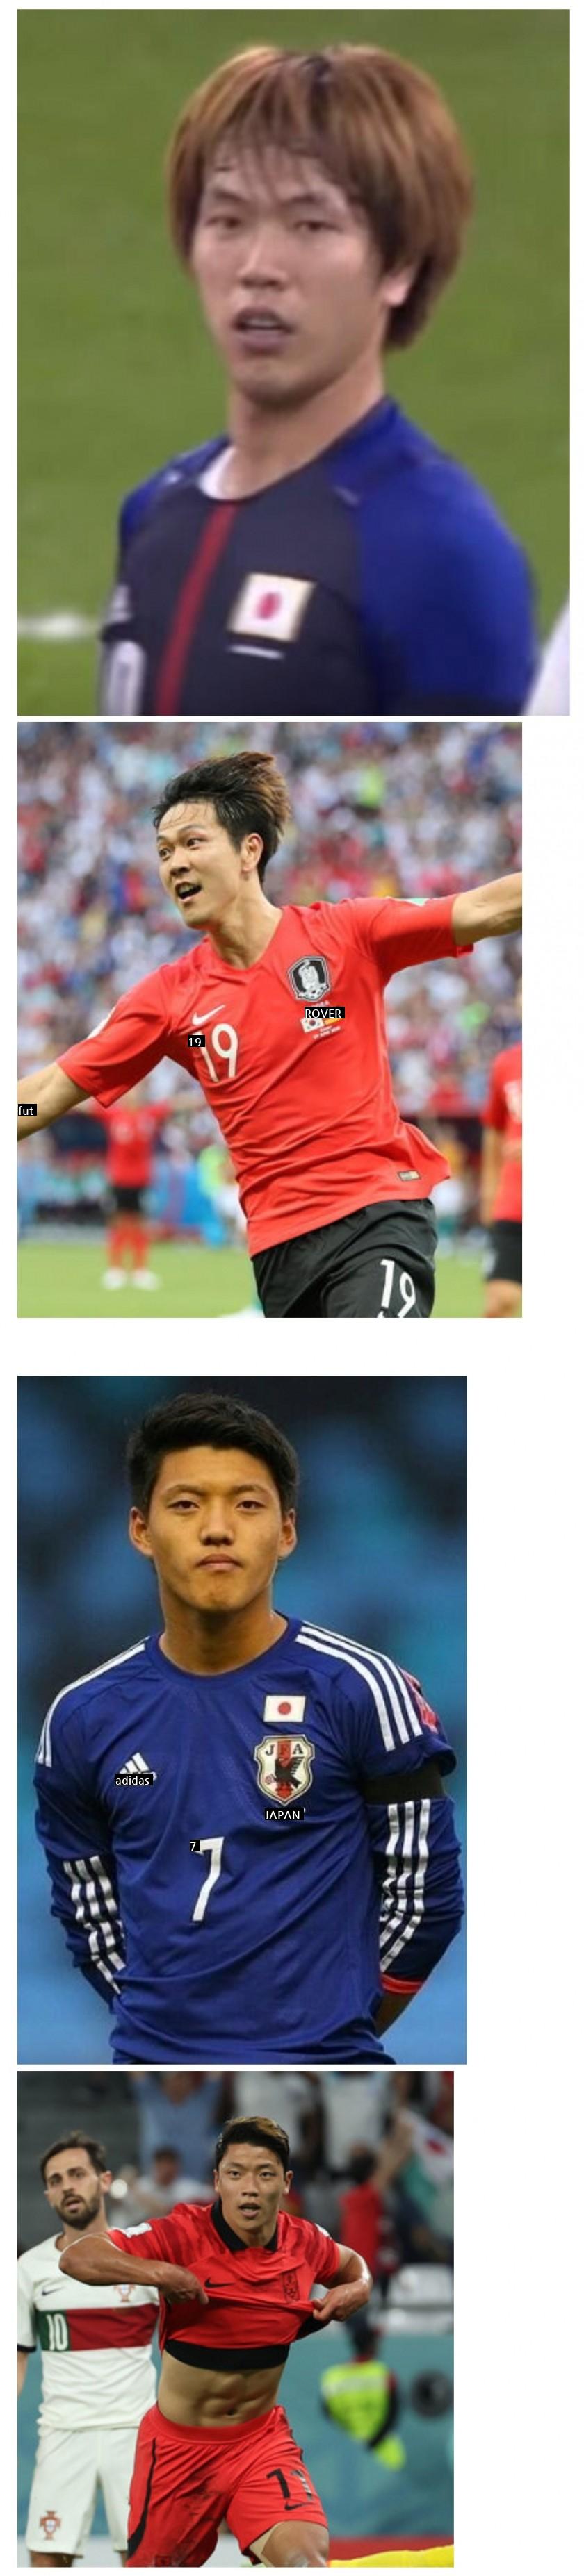 韓国、日本選手共有疑惑